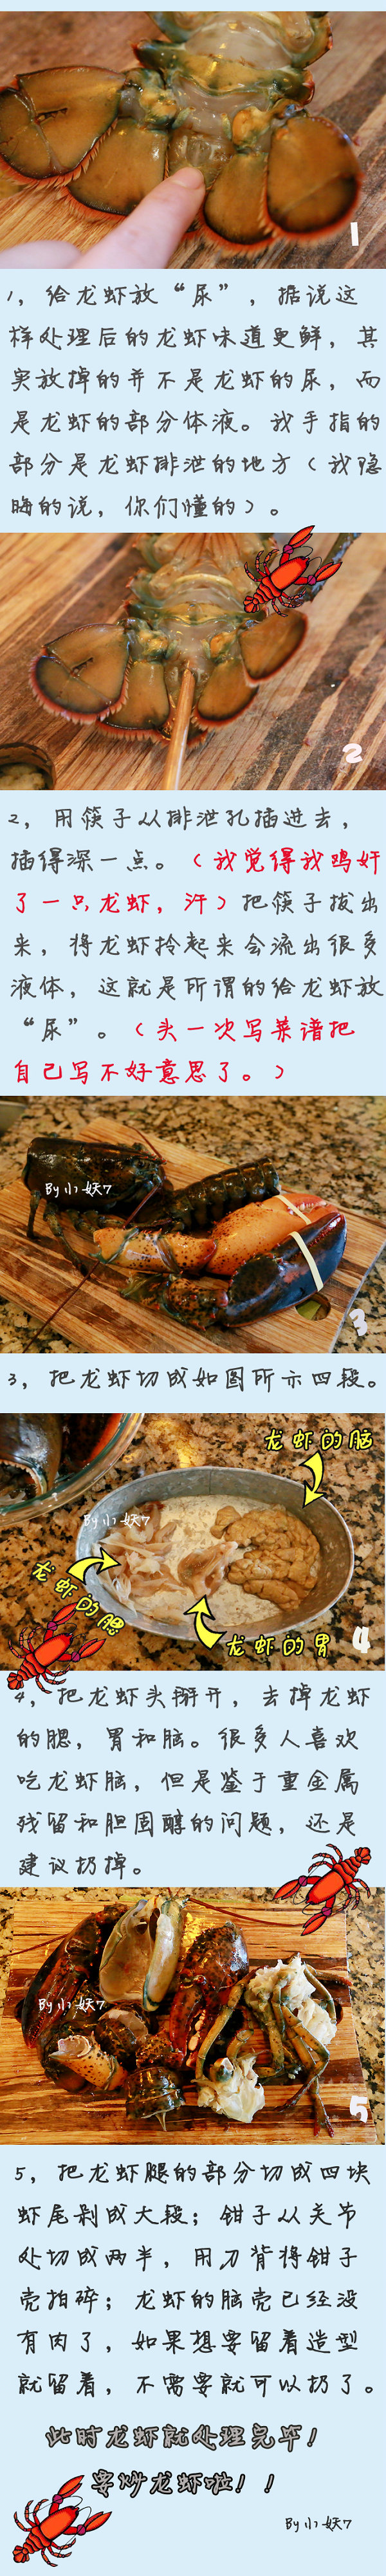 葱姜龙虾的做法_另附处理龙虾爆笑秘籍_小妖7de生活馆